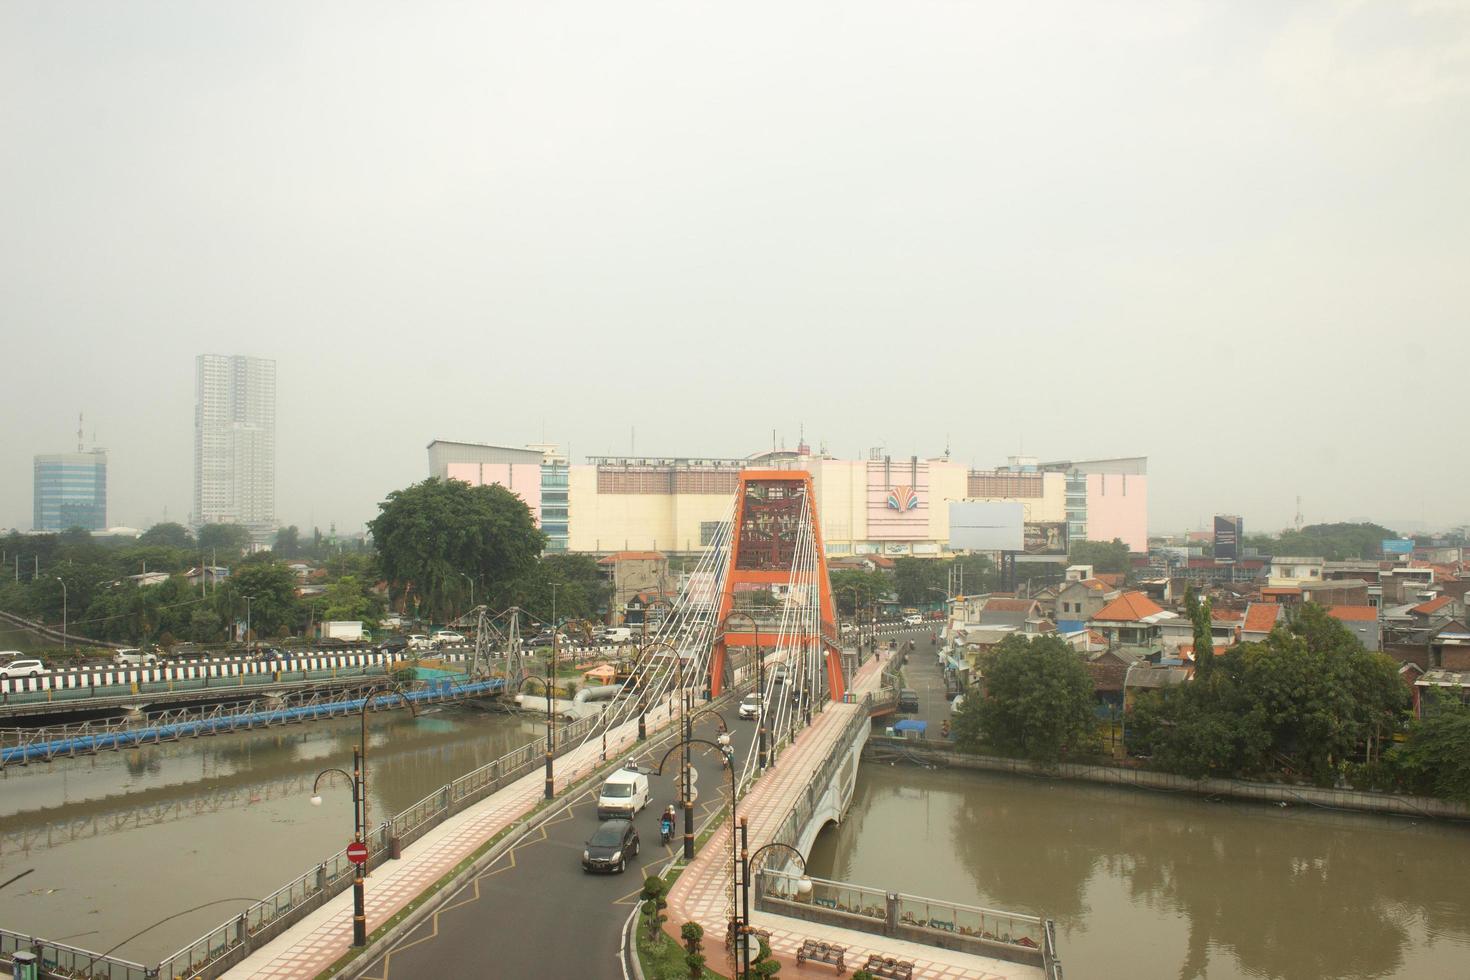 jembatan zaagtanden is een van de populair bruggen in Soerabaja. deze brug verbindt de voorgevel weg Aan de west kant van jalan raya wonokromo met jalan gunungsari foto